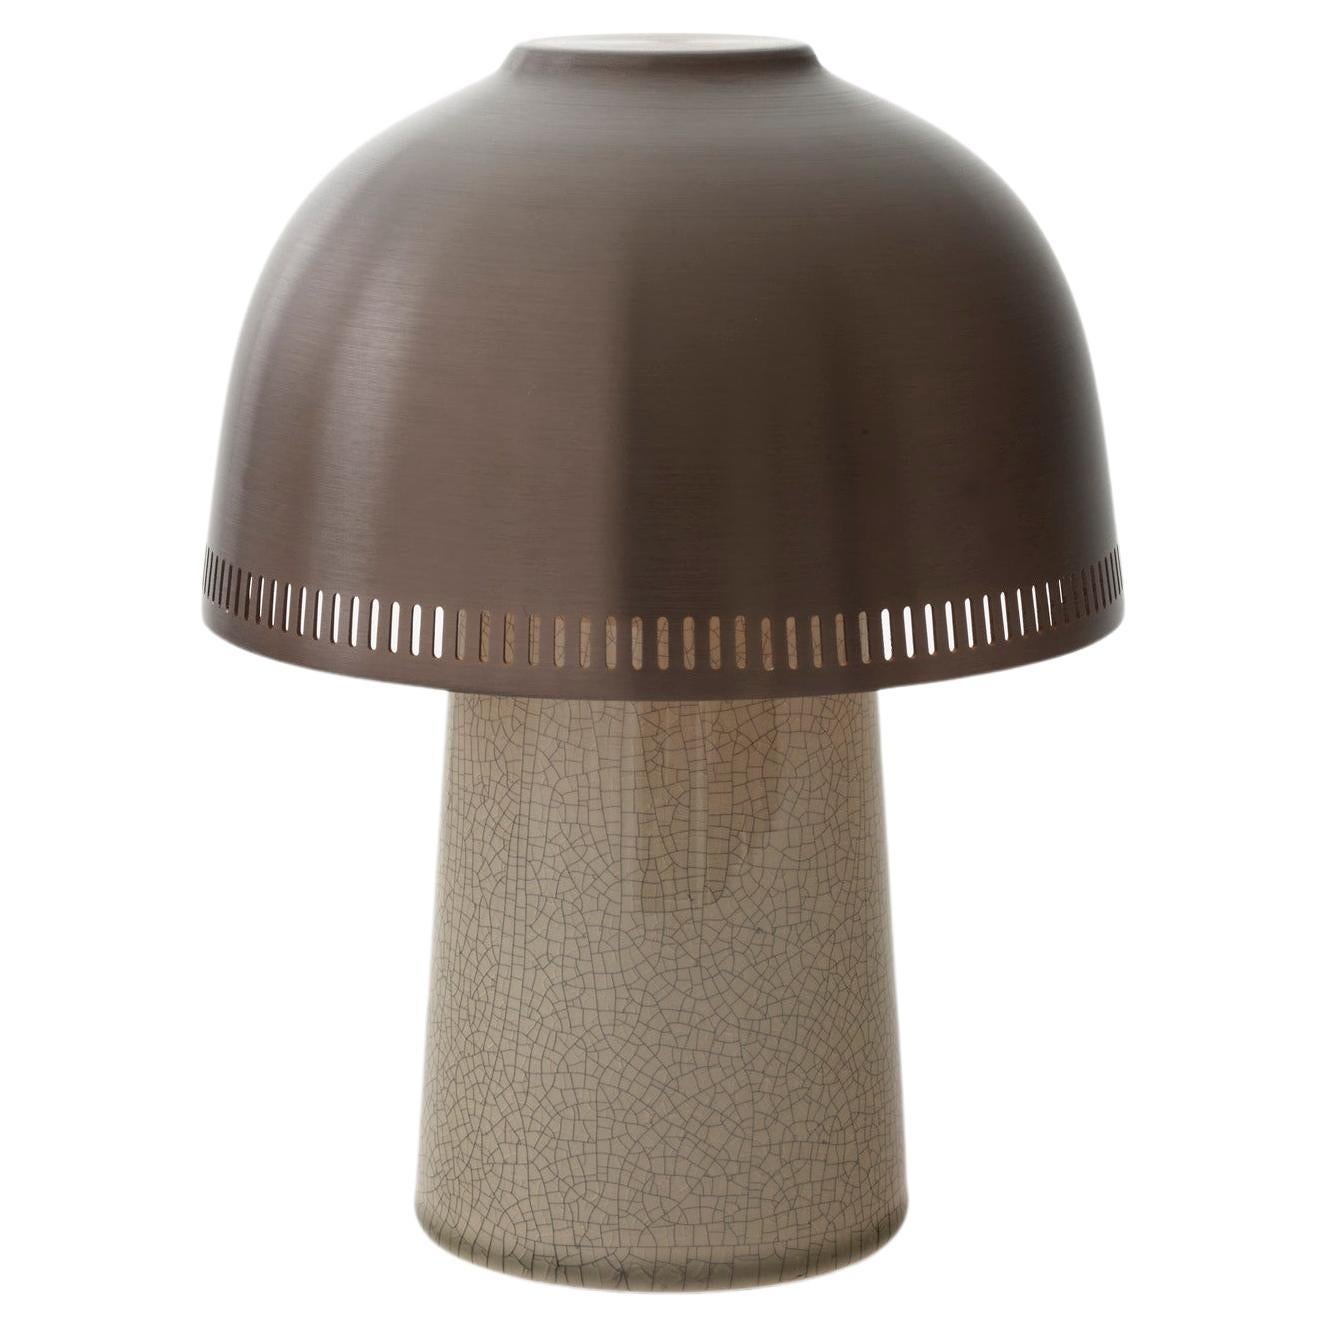 Raku SH8, Beigegraue/bronzefarbene Porzellan-Tischlampe für &Tradition